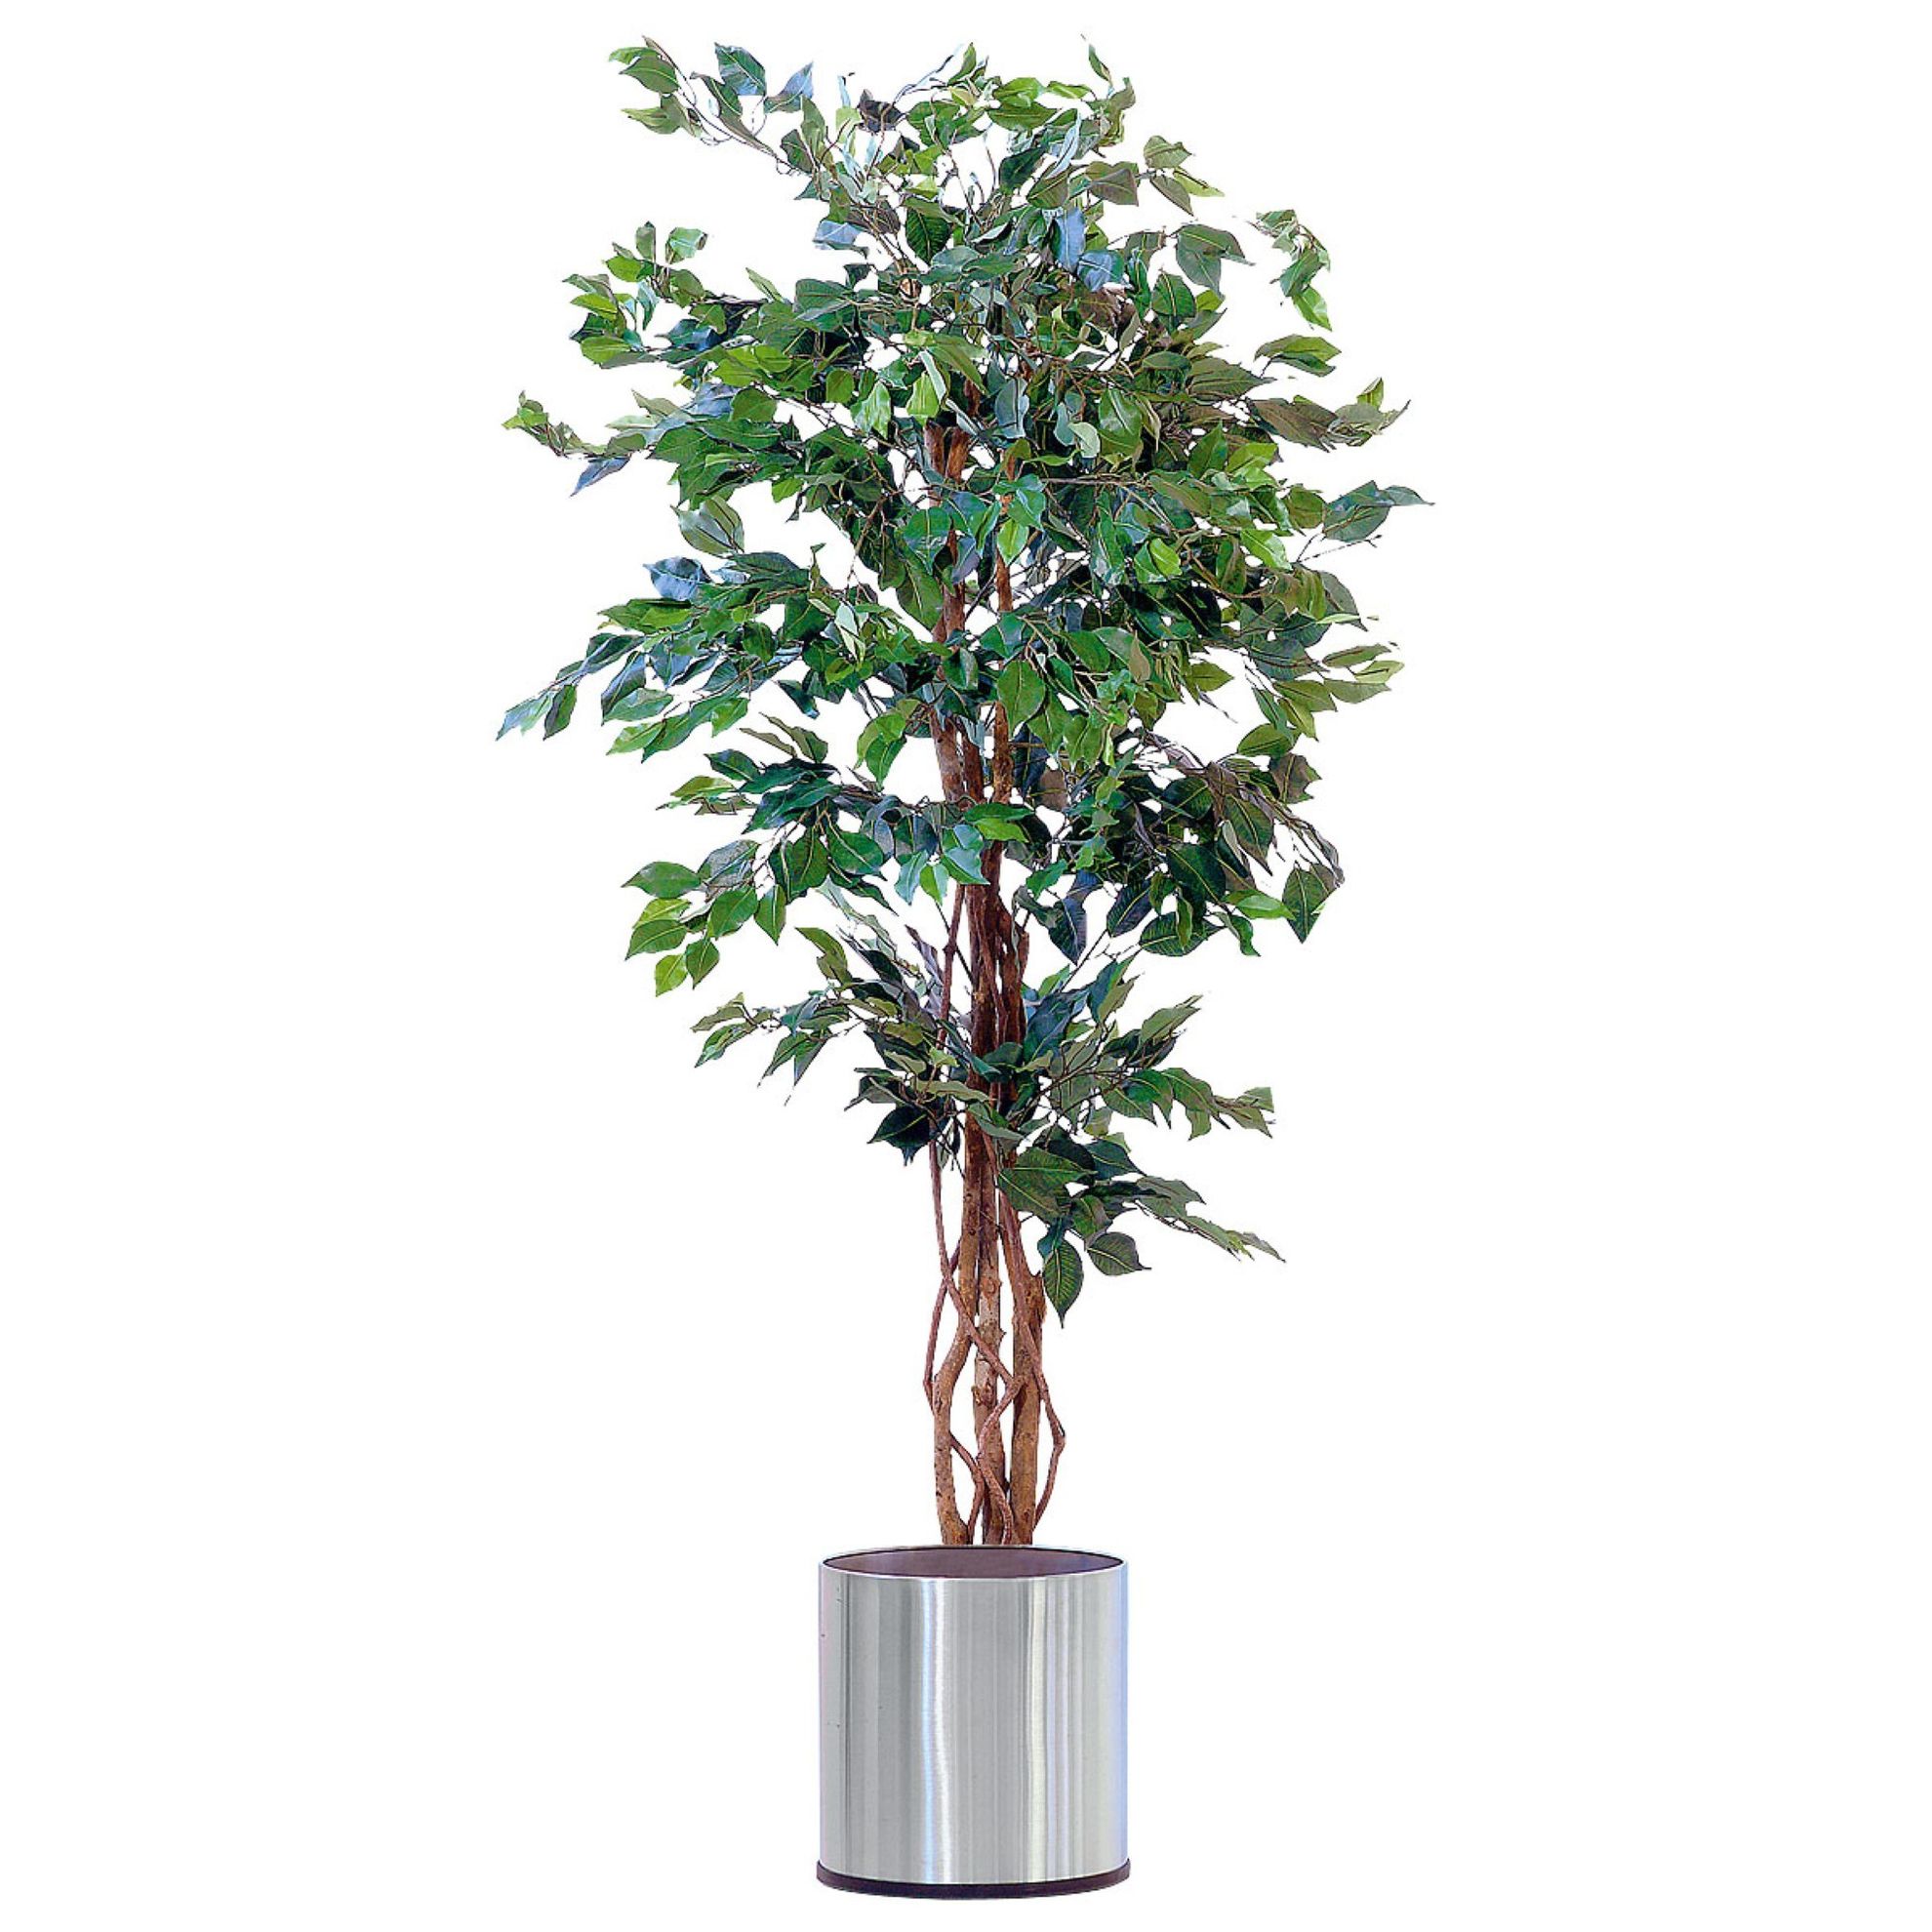 Kunstpflanze Ficus Benjamini jetzt bei Weltbild.de bestellen